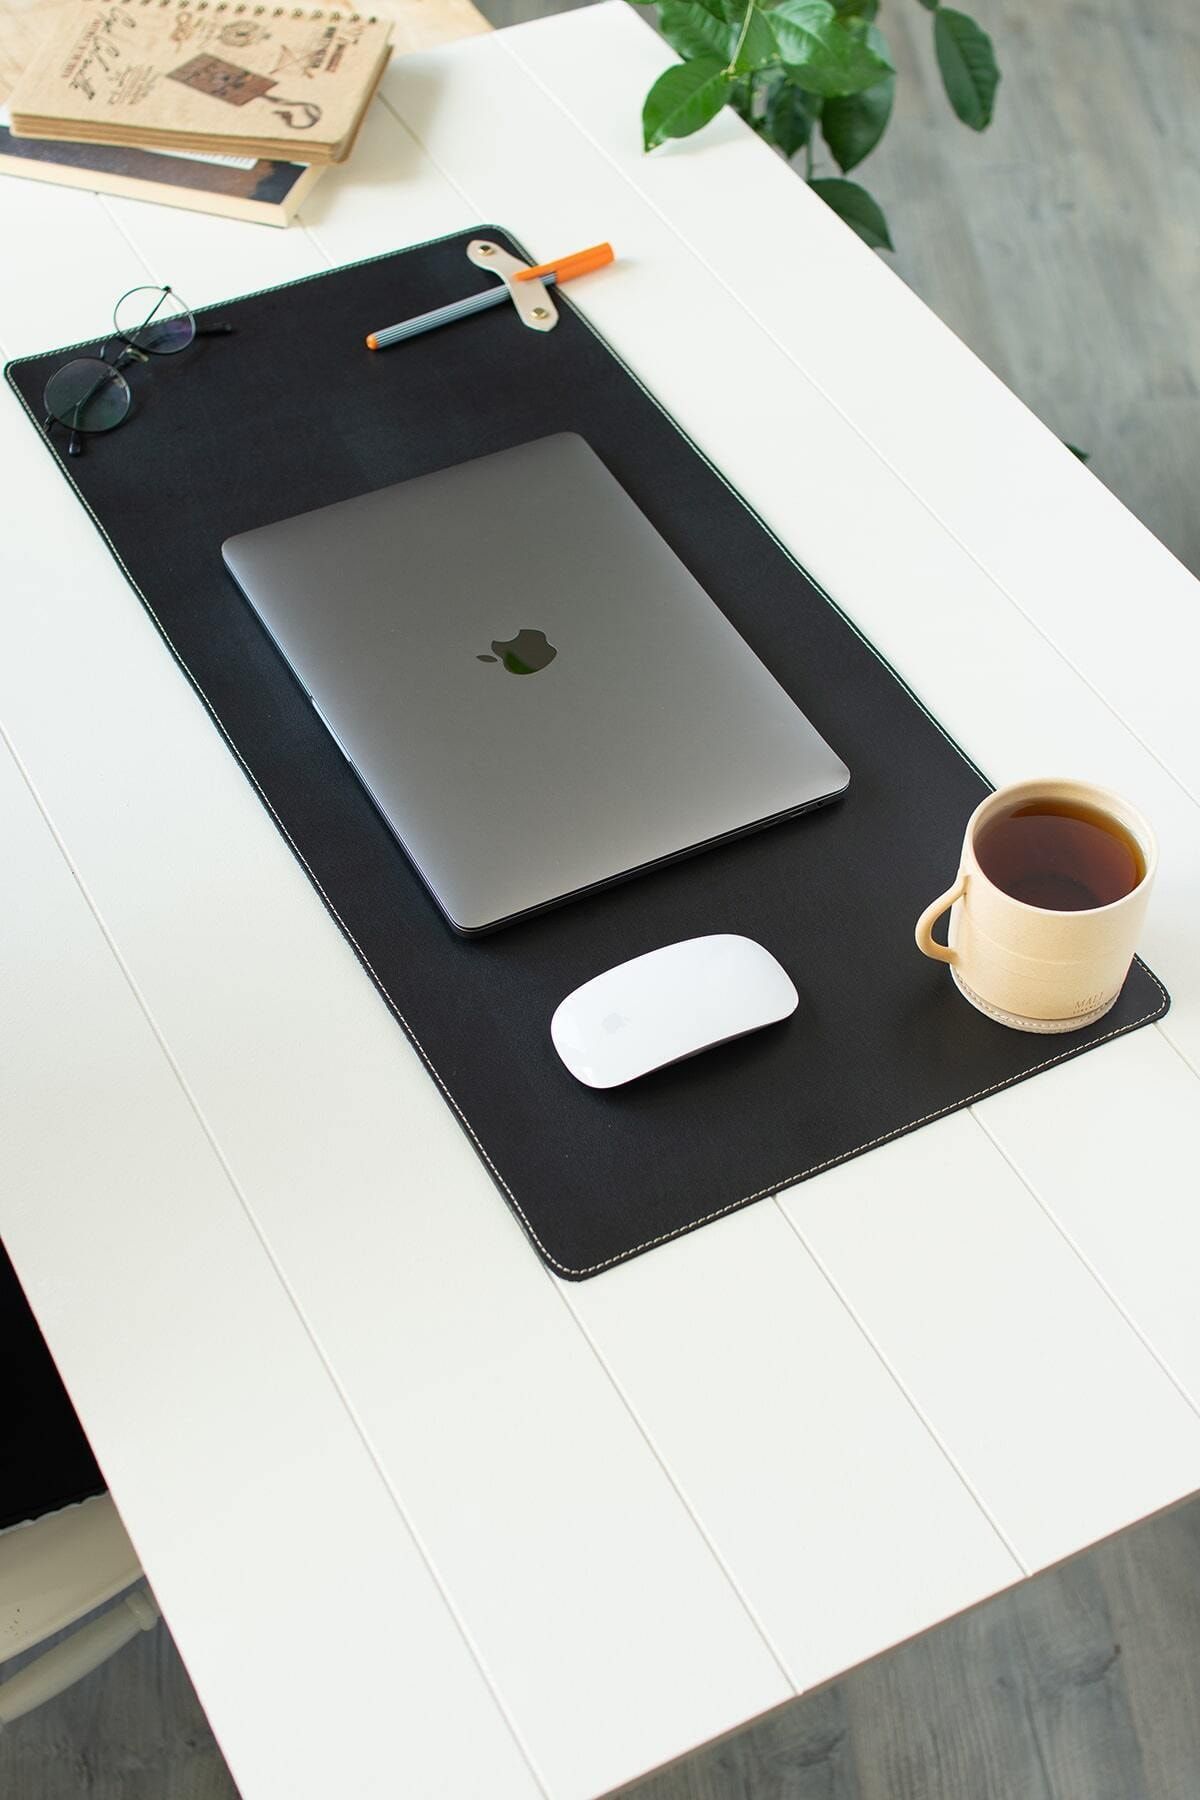 dk leather Siyah Masa Matı- Laptop Altlığı - Sümen Takımı - Geniş Mousepad -